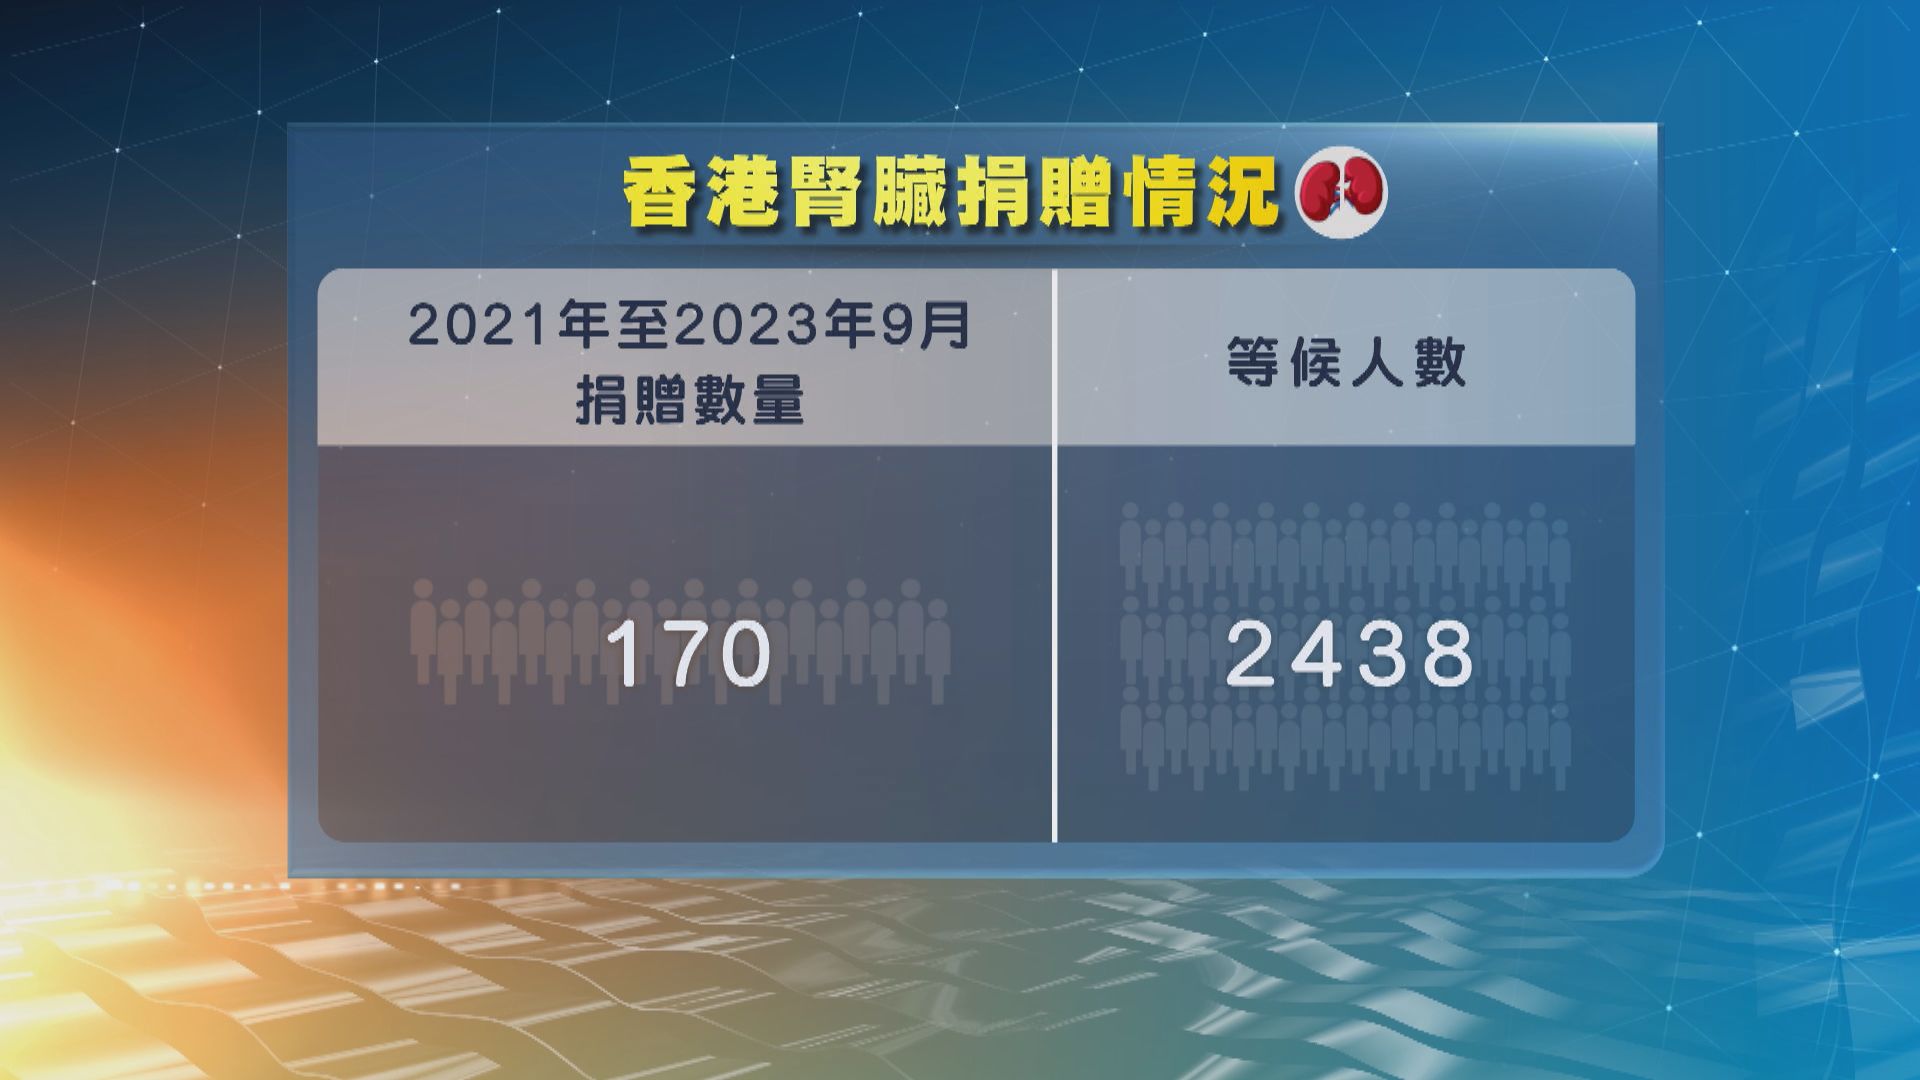 香港腎臟捐贈宗數偏低 醫管局呼籲市民支持器官捐贈